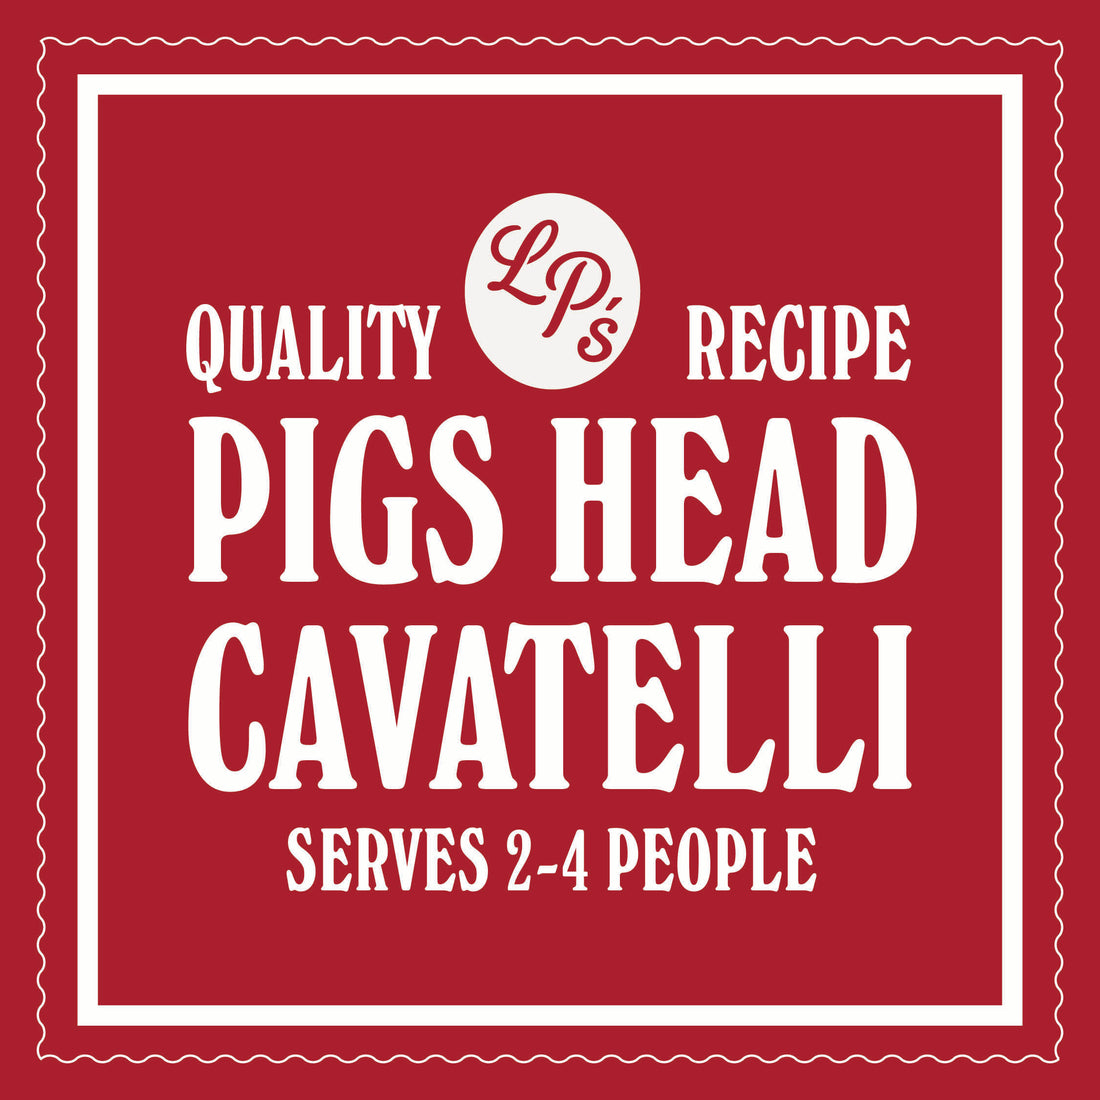 PIG'S HEAD CAVATELLI